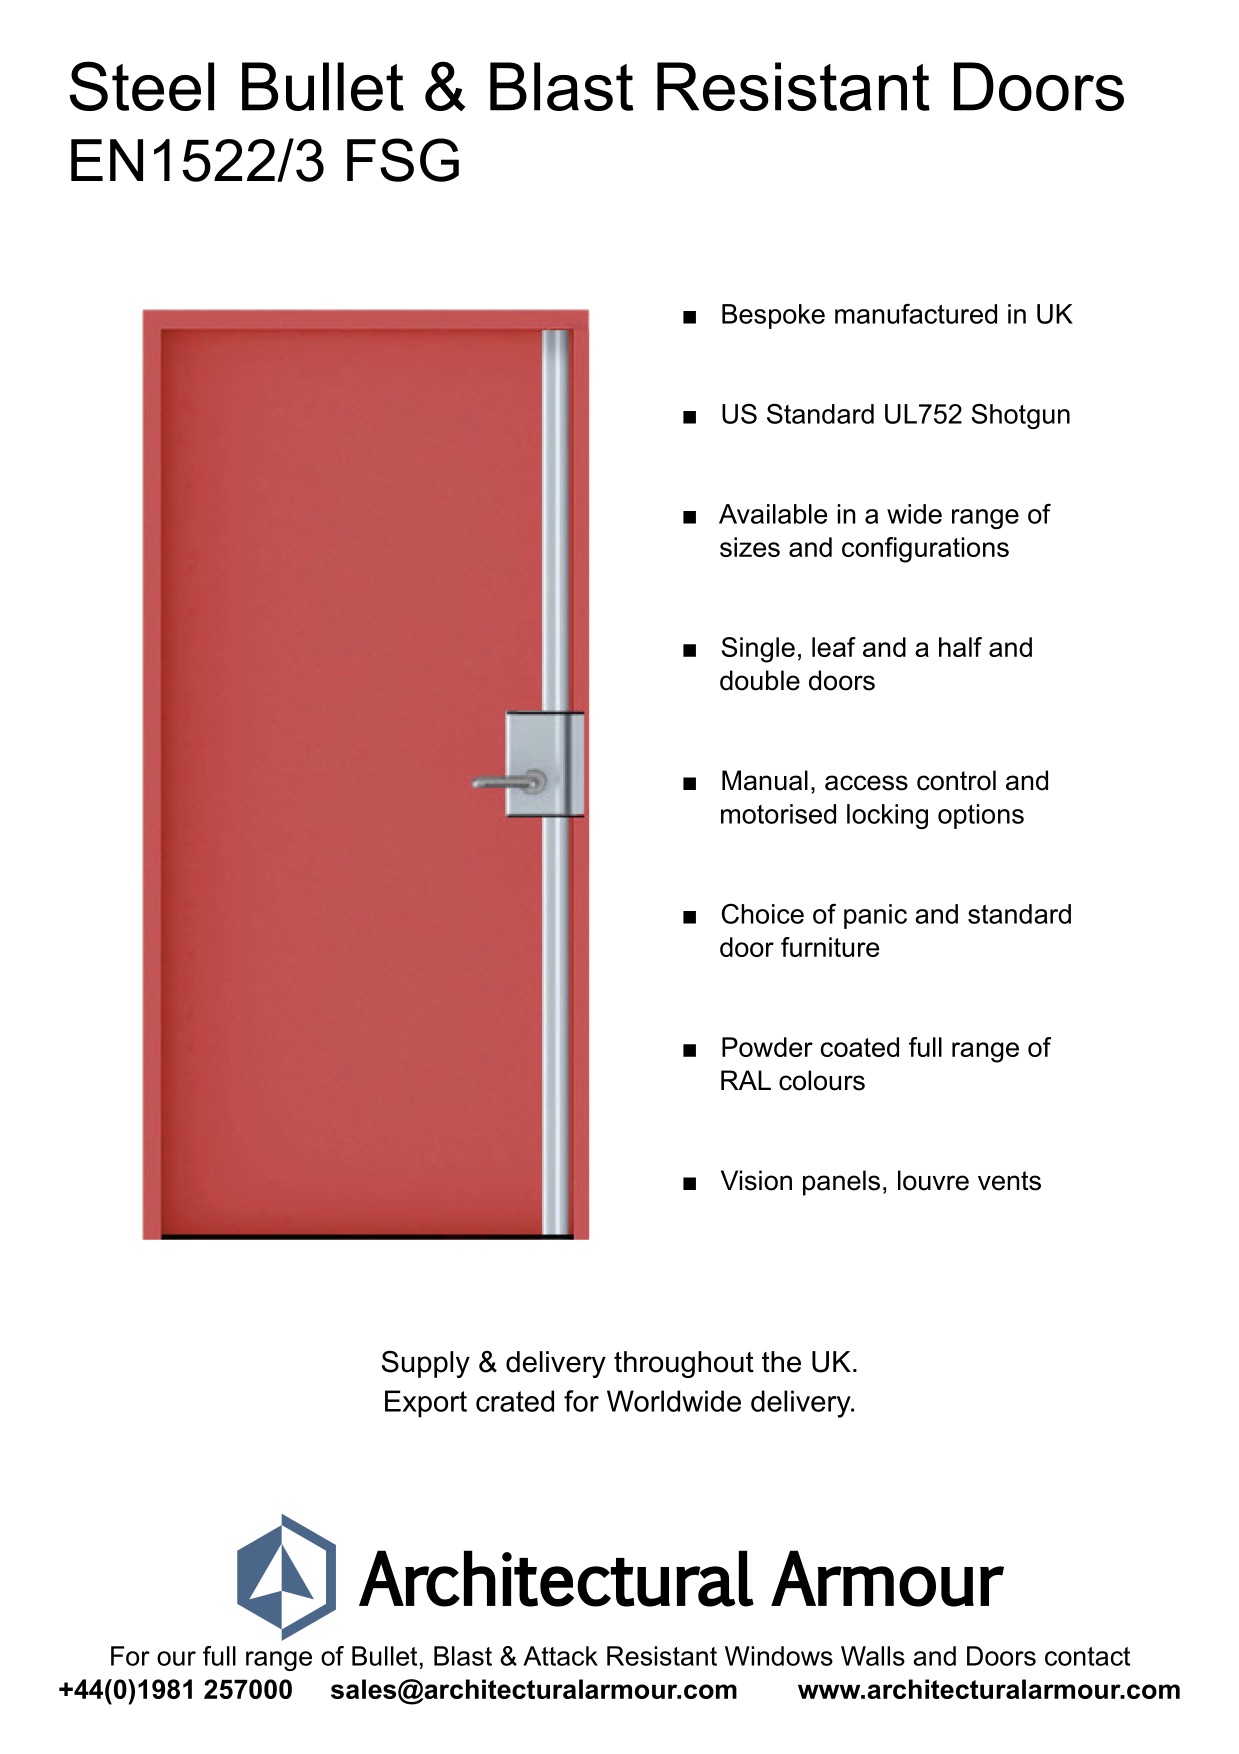 Blast-and-Bullet-Resistant-Steel-Door-UK-EN1522-3-FSG